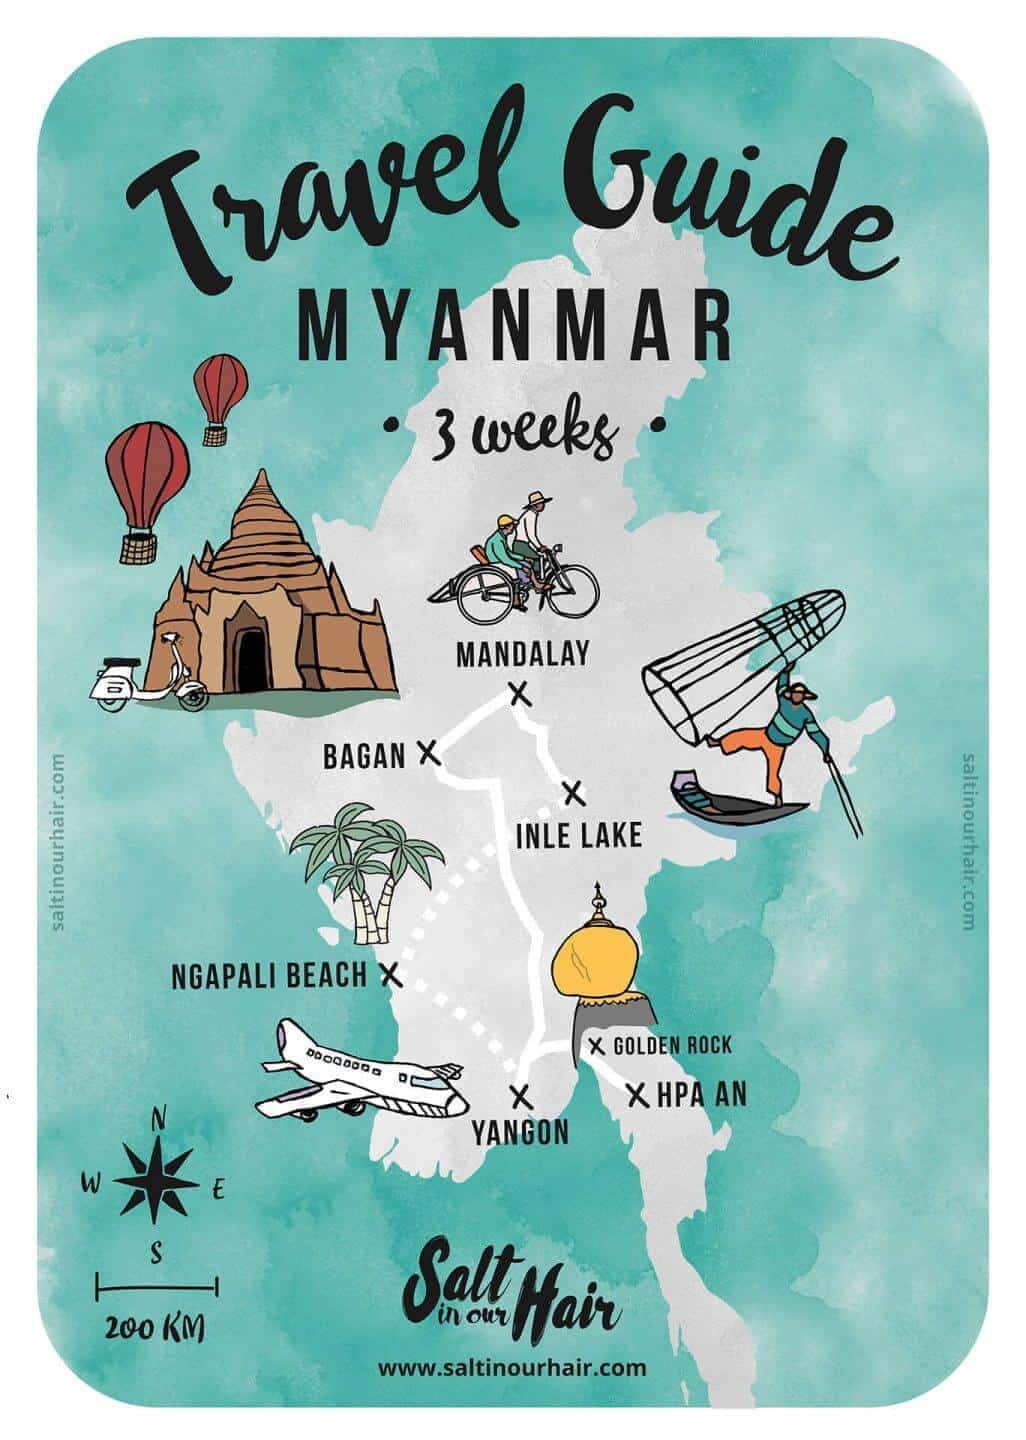 road travel in myanmar